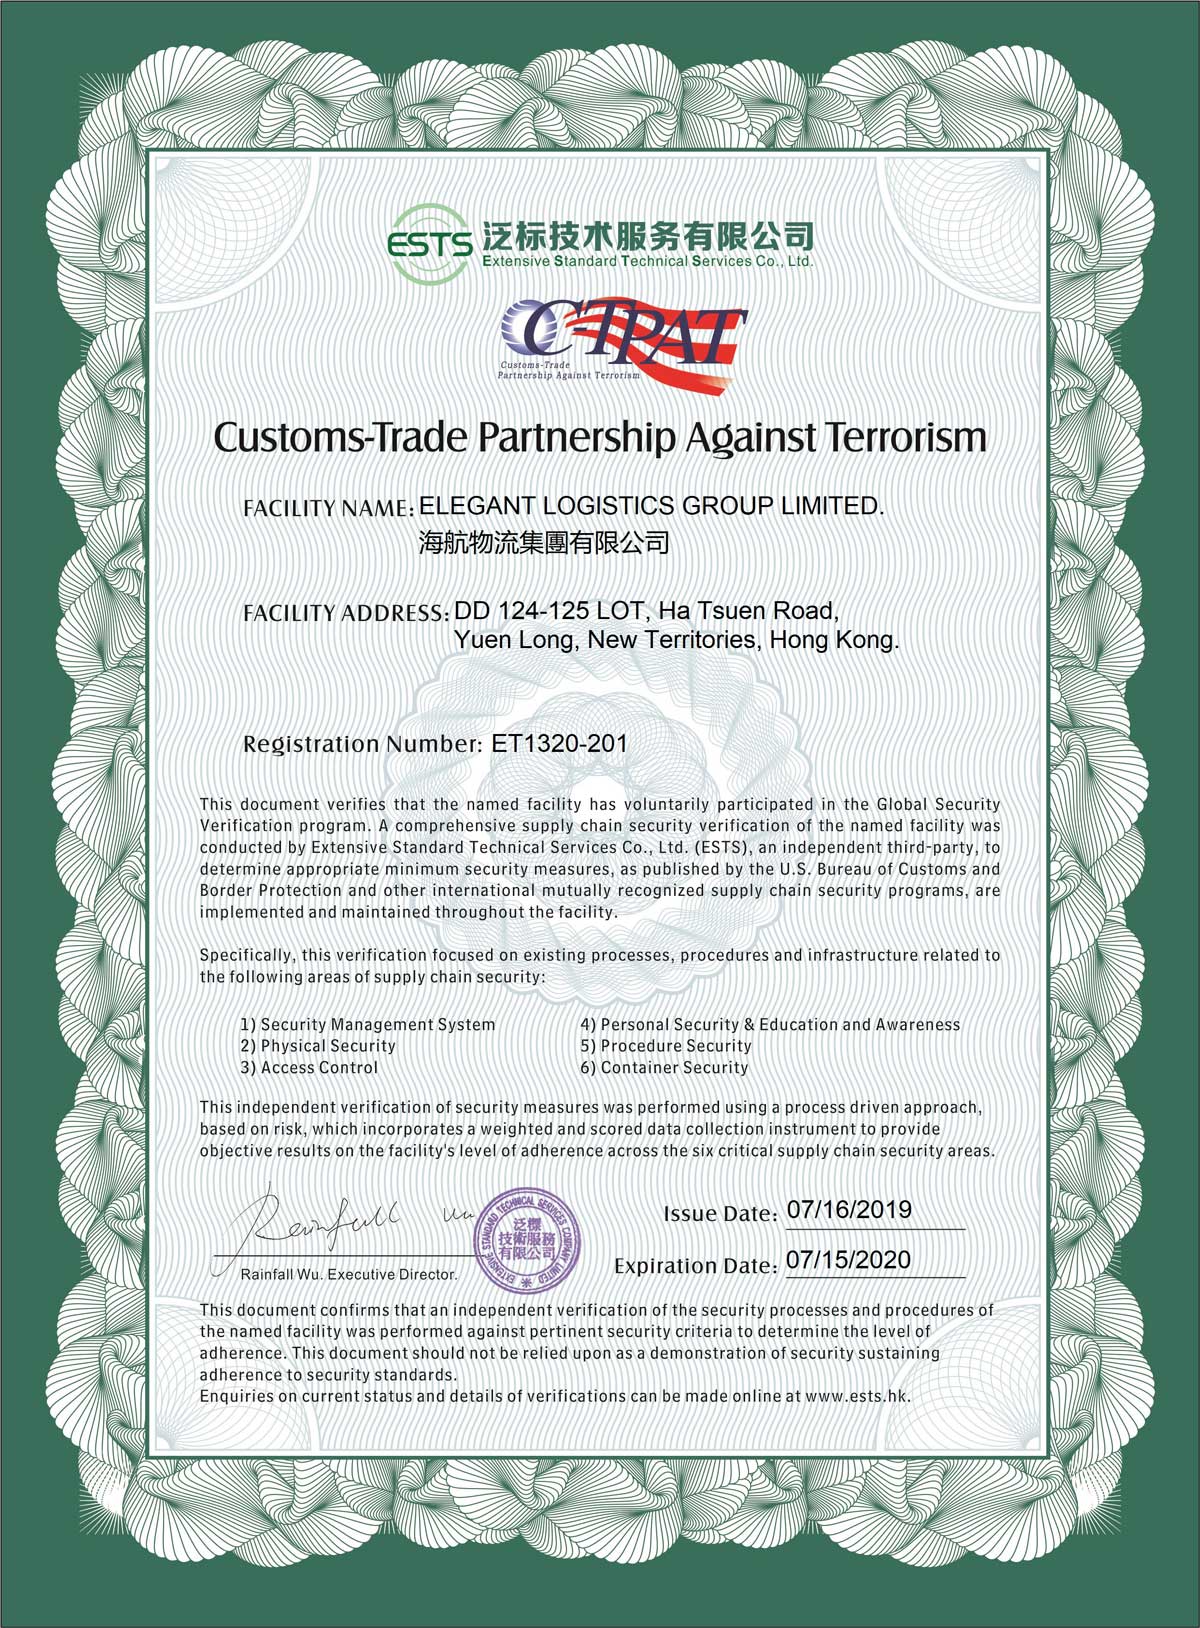 2019年7月考獲美國海關商貿反恐聯盟 (C-TPAT) 成員資格